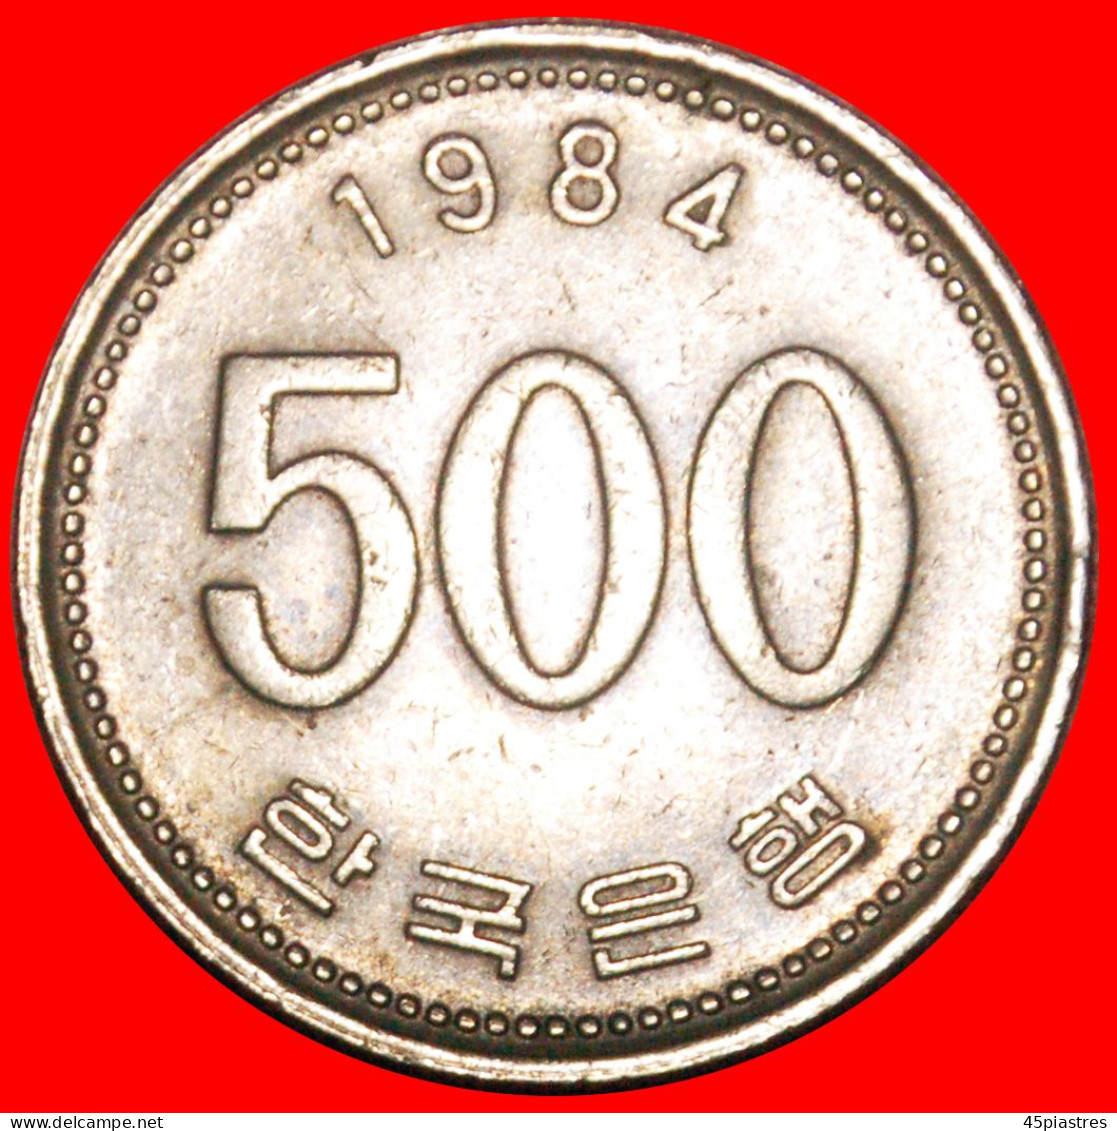 * MANCHURIAN CRANE (1982-2019): SOUTH KOREA  500 WON 1984! ·  LOW START · NO RESERVE! - Coreal Del Sur